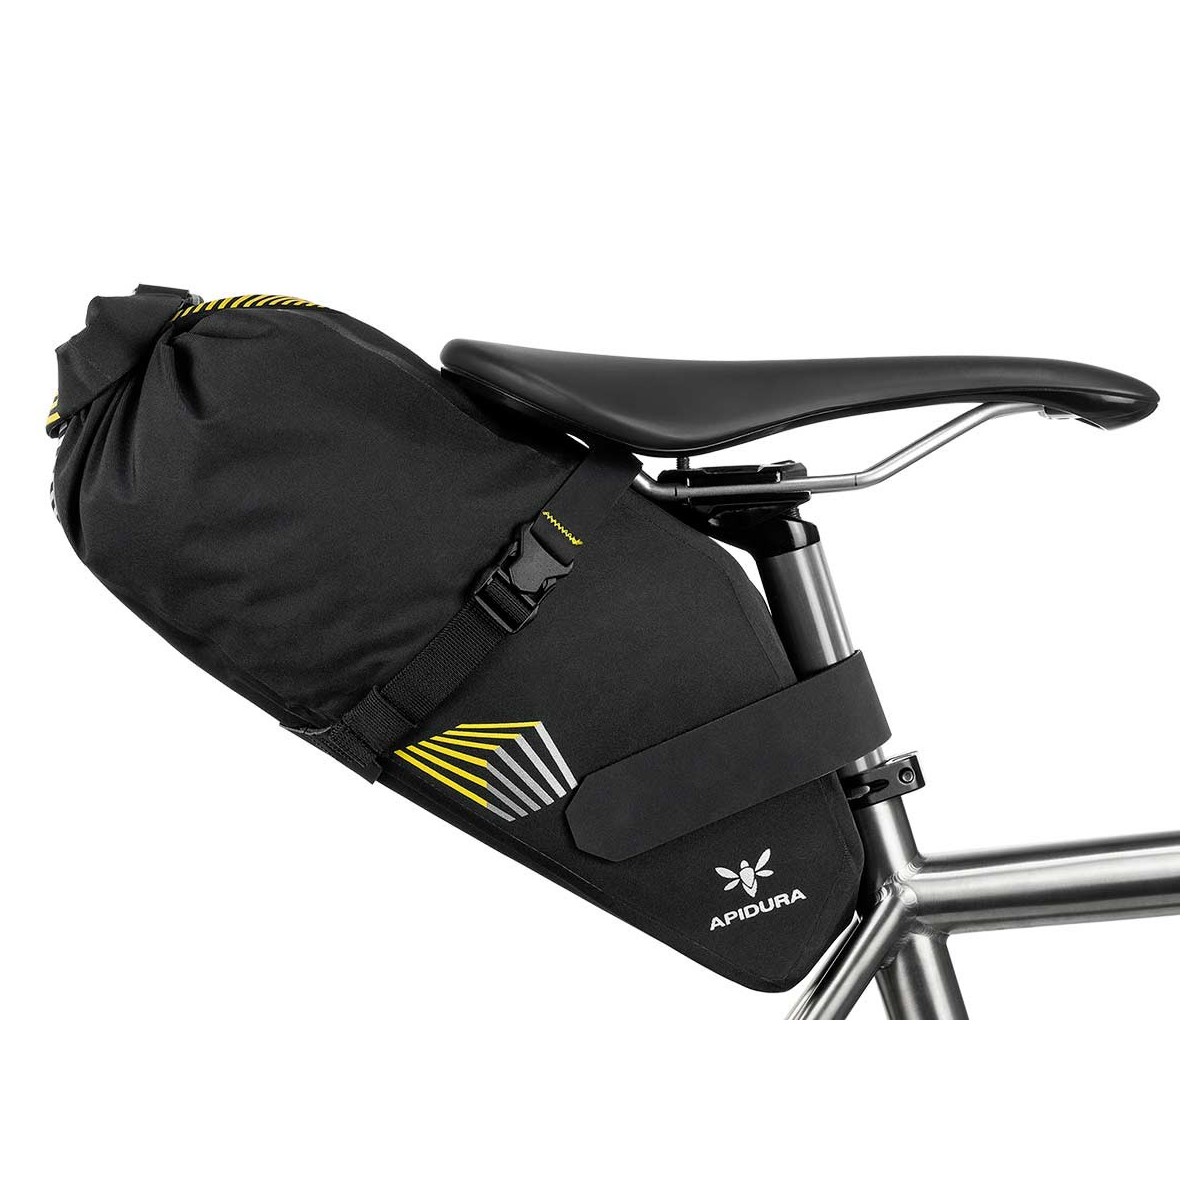 APIDURA bike bag RACING SADDLE PACK 7L